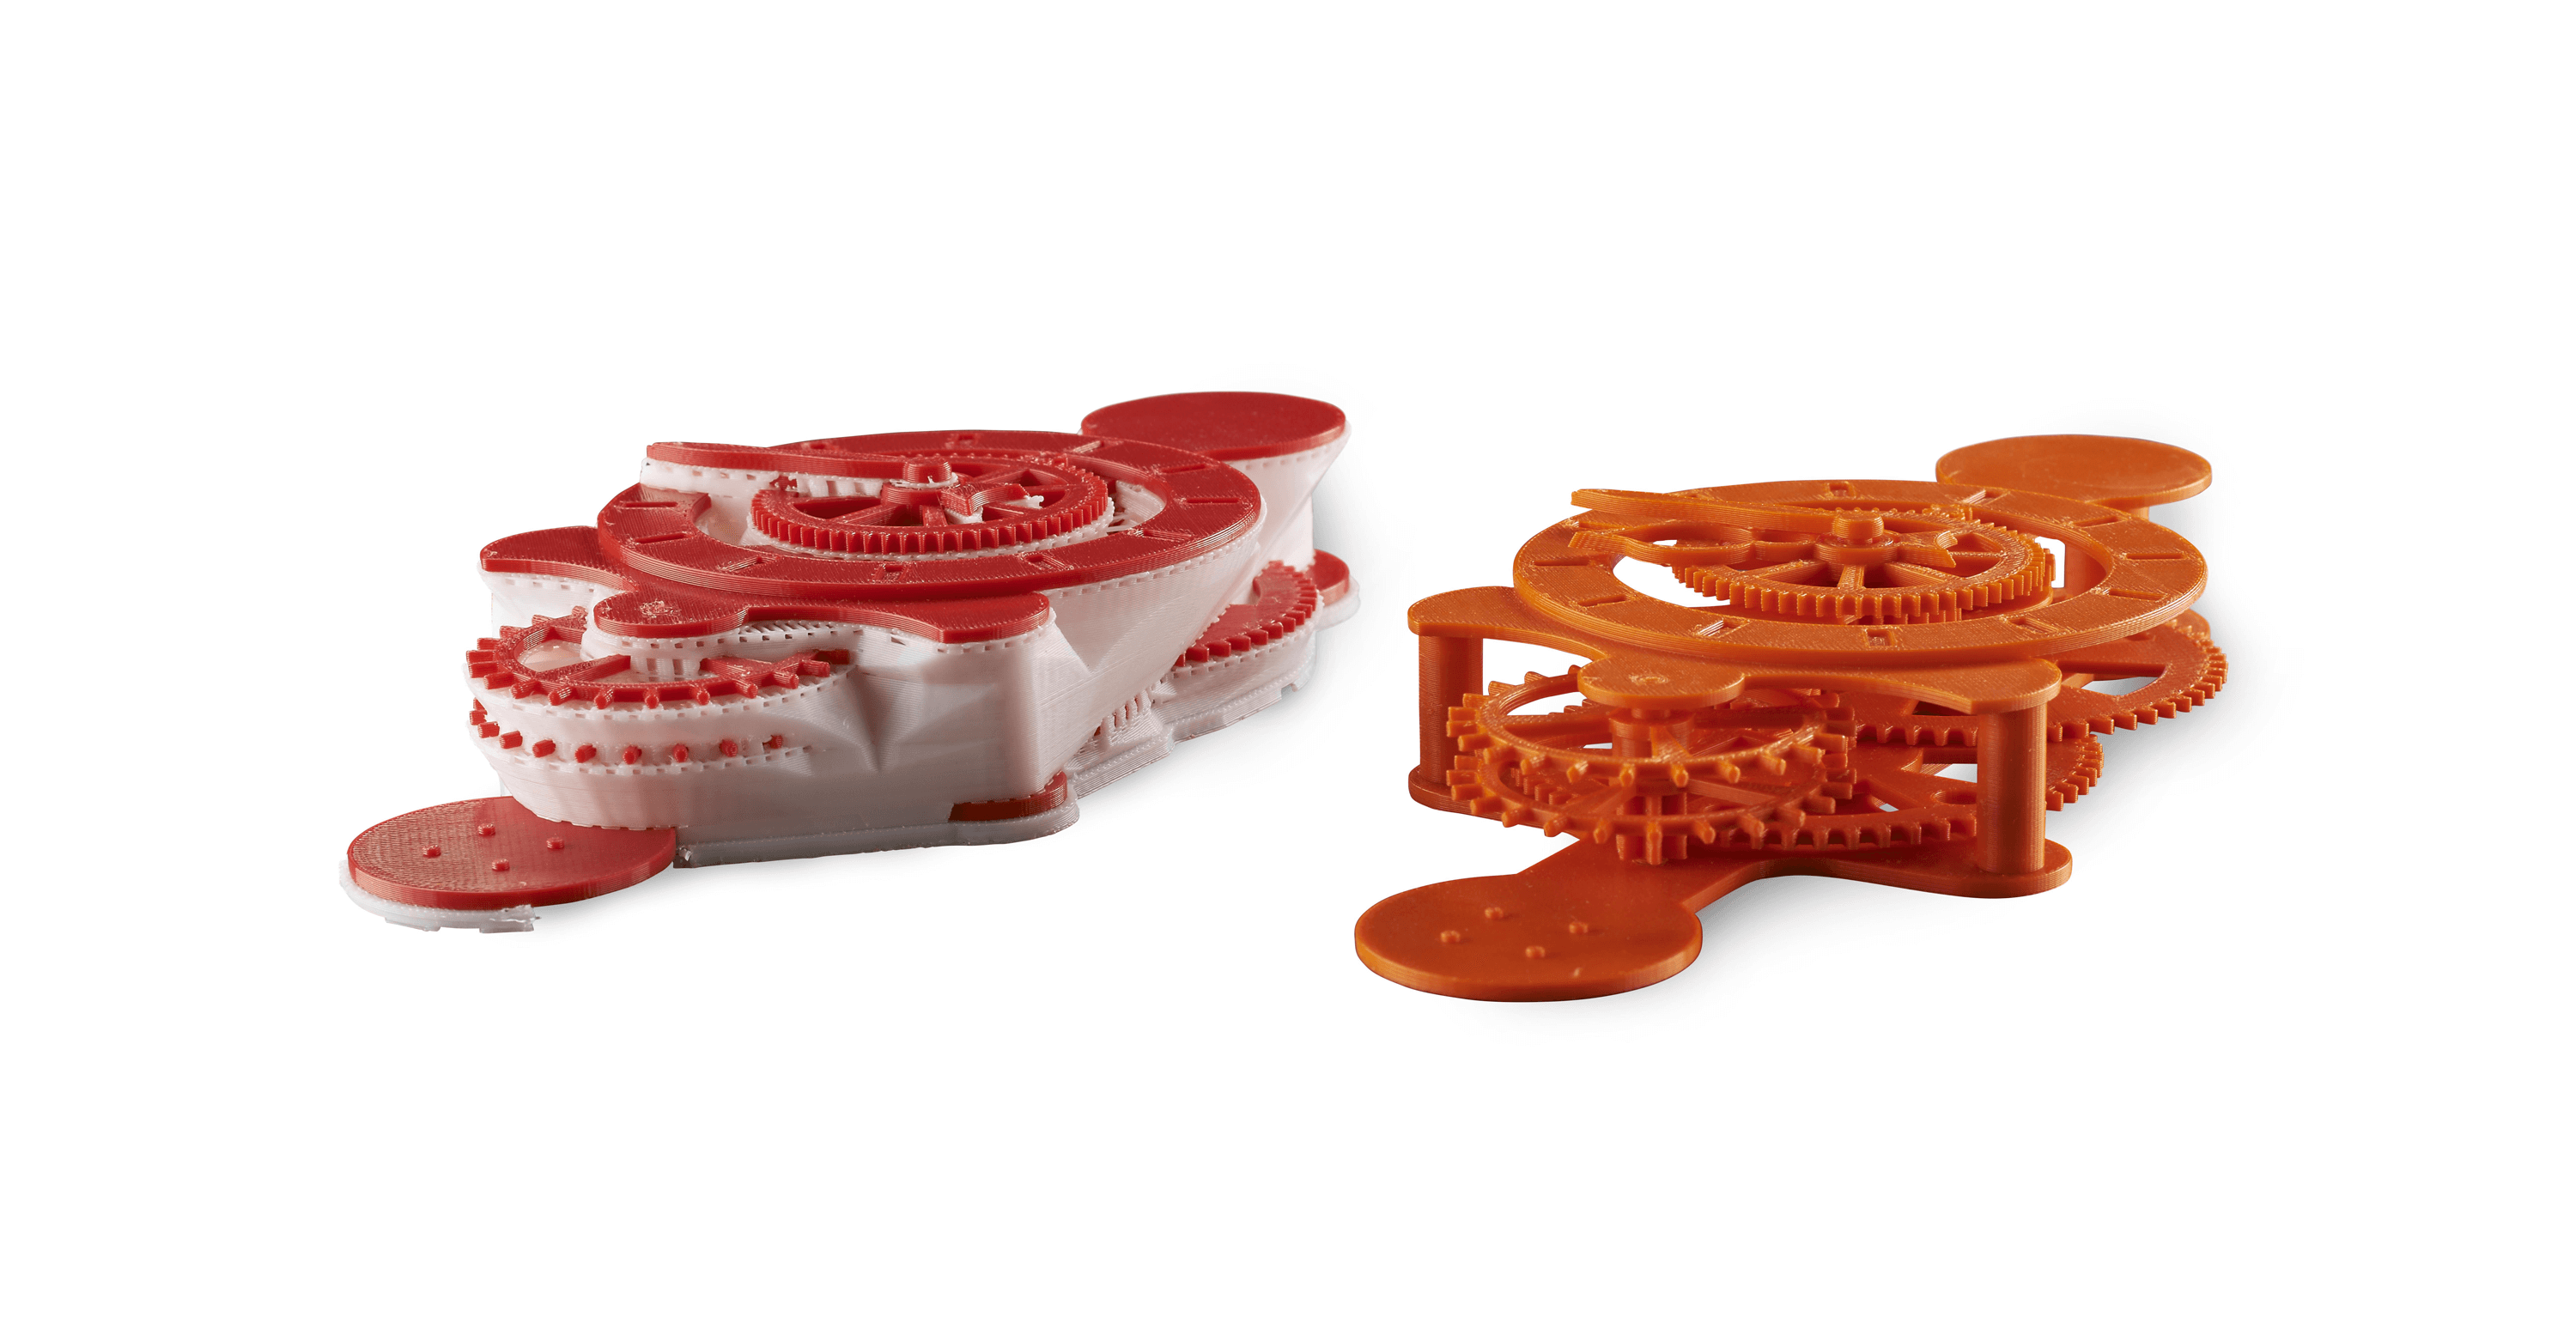 剛性和可溶的支撐材料使構建具有複雜形狀和內部空腔的3D列印零件成為可能。